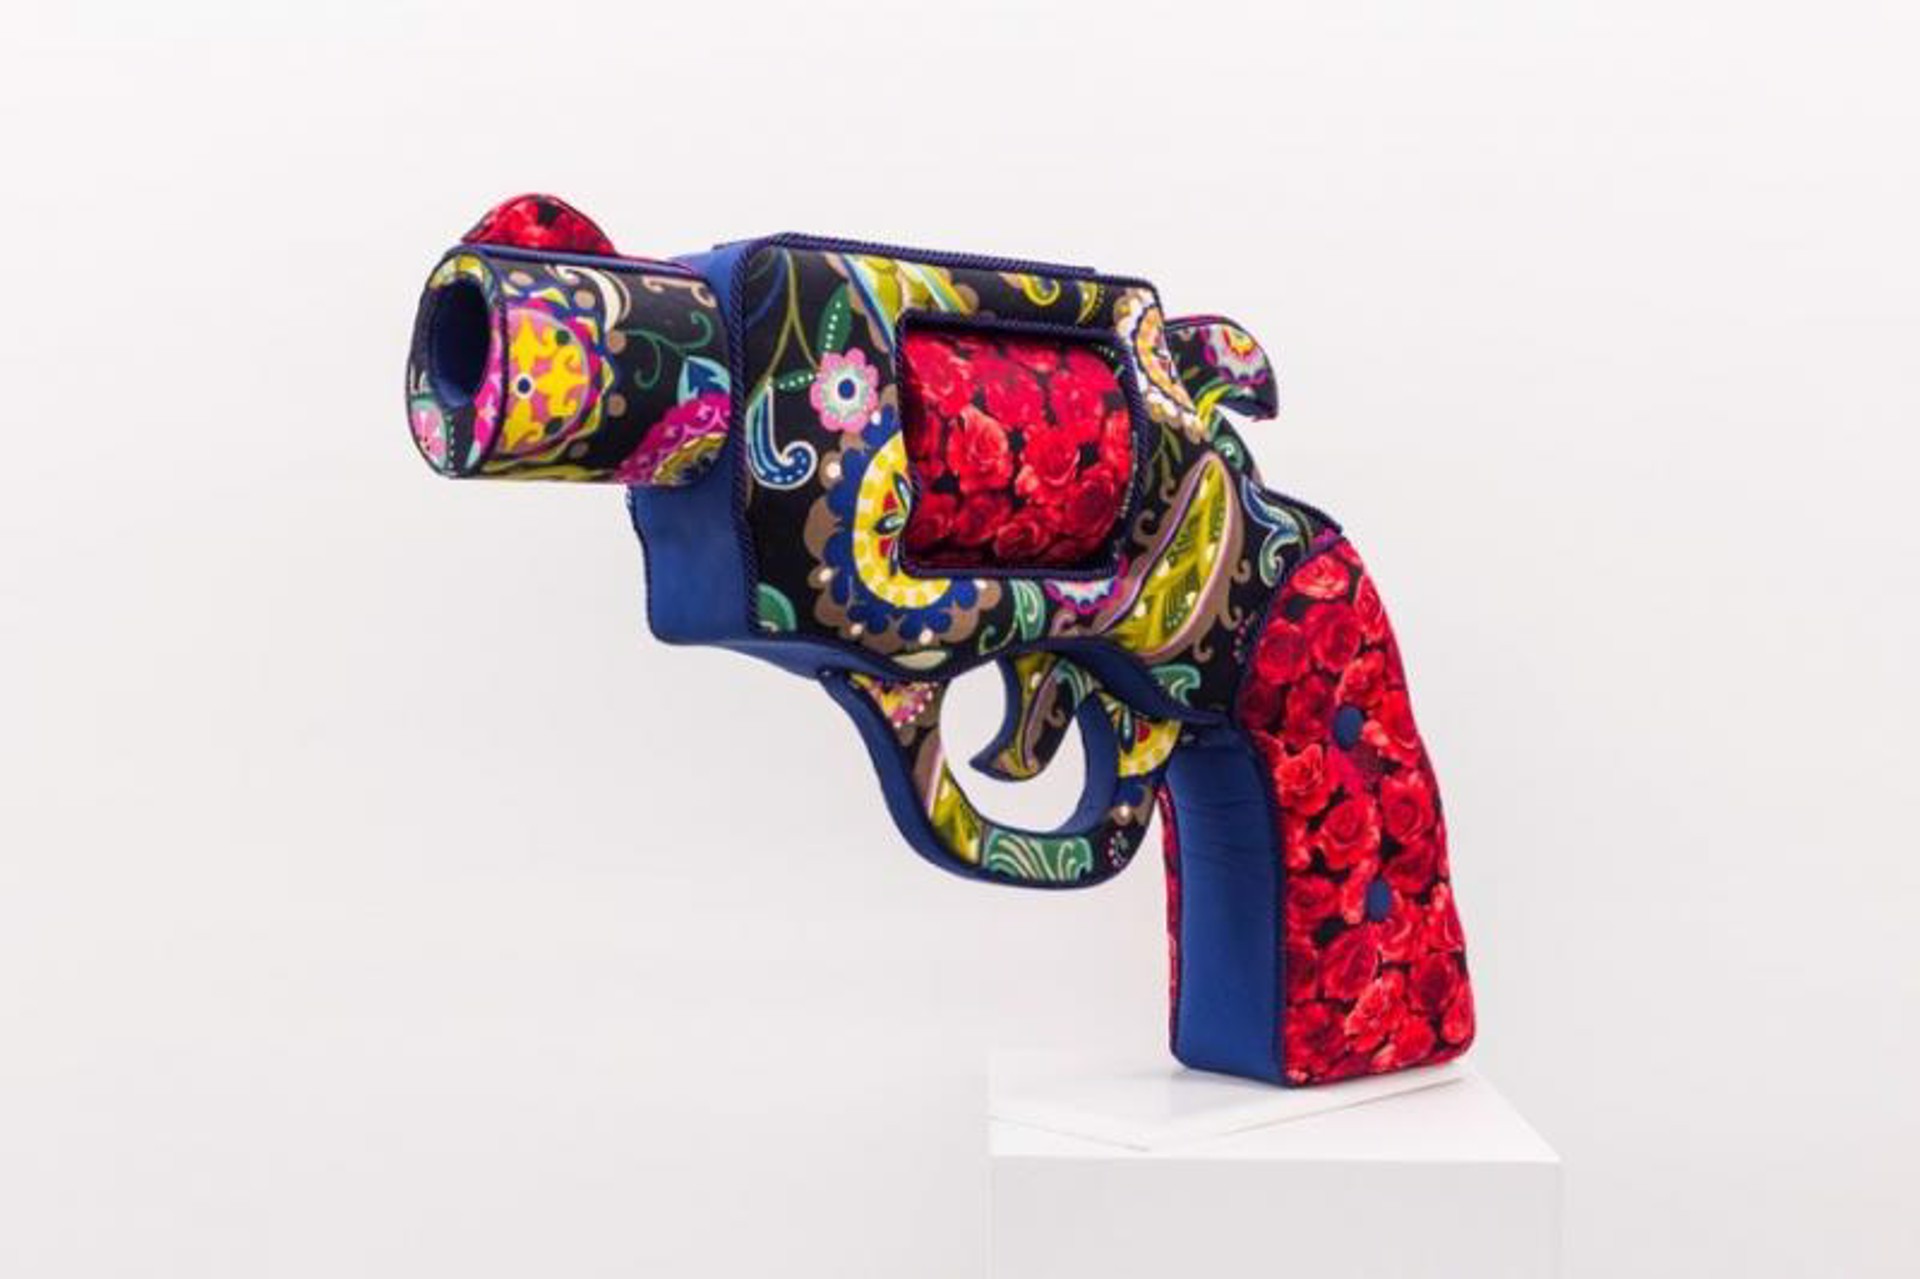 Rosa Pistola by Corey Pickett